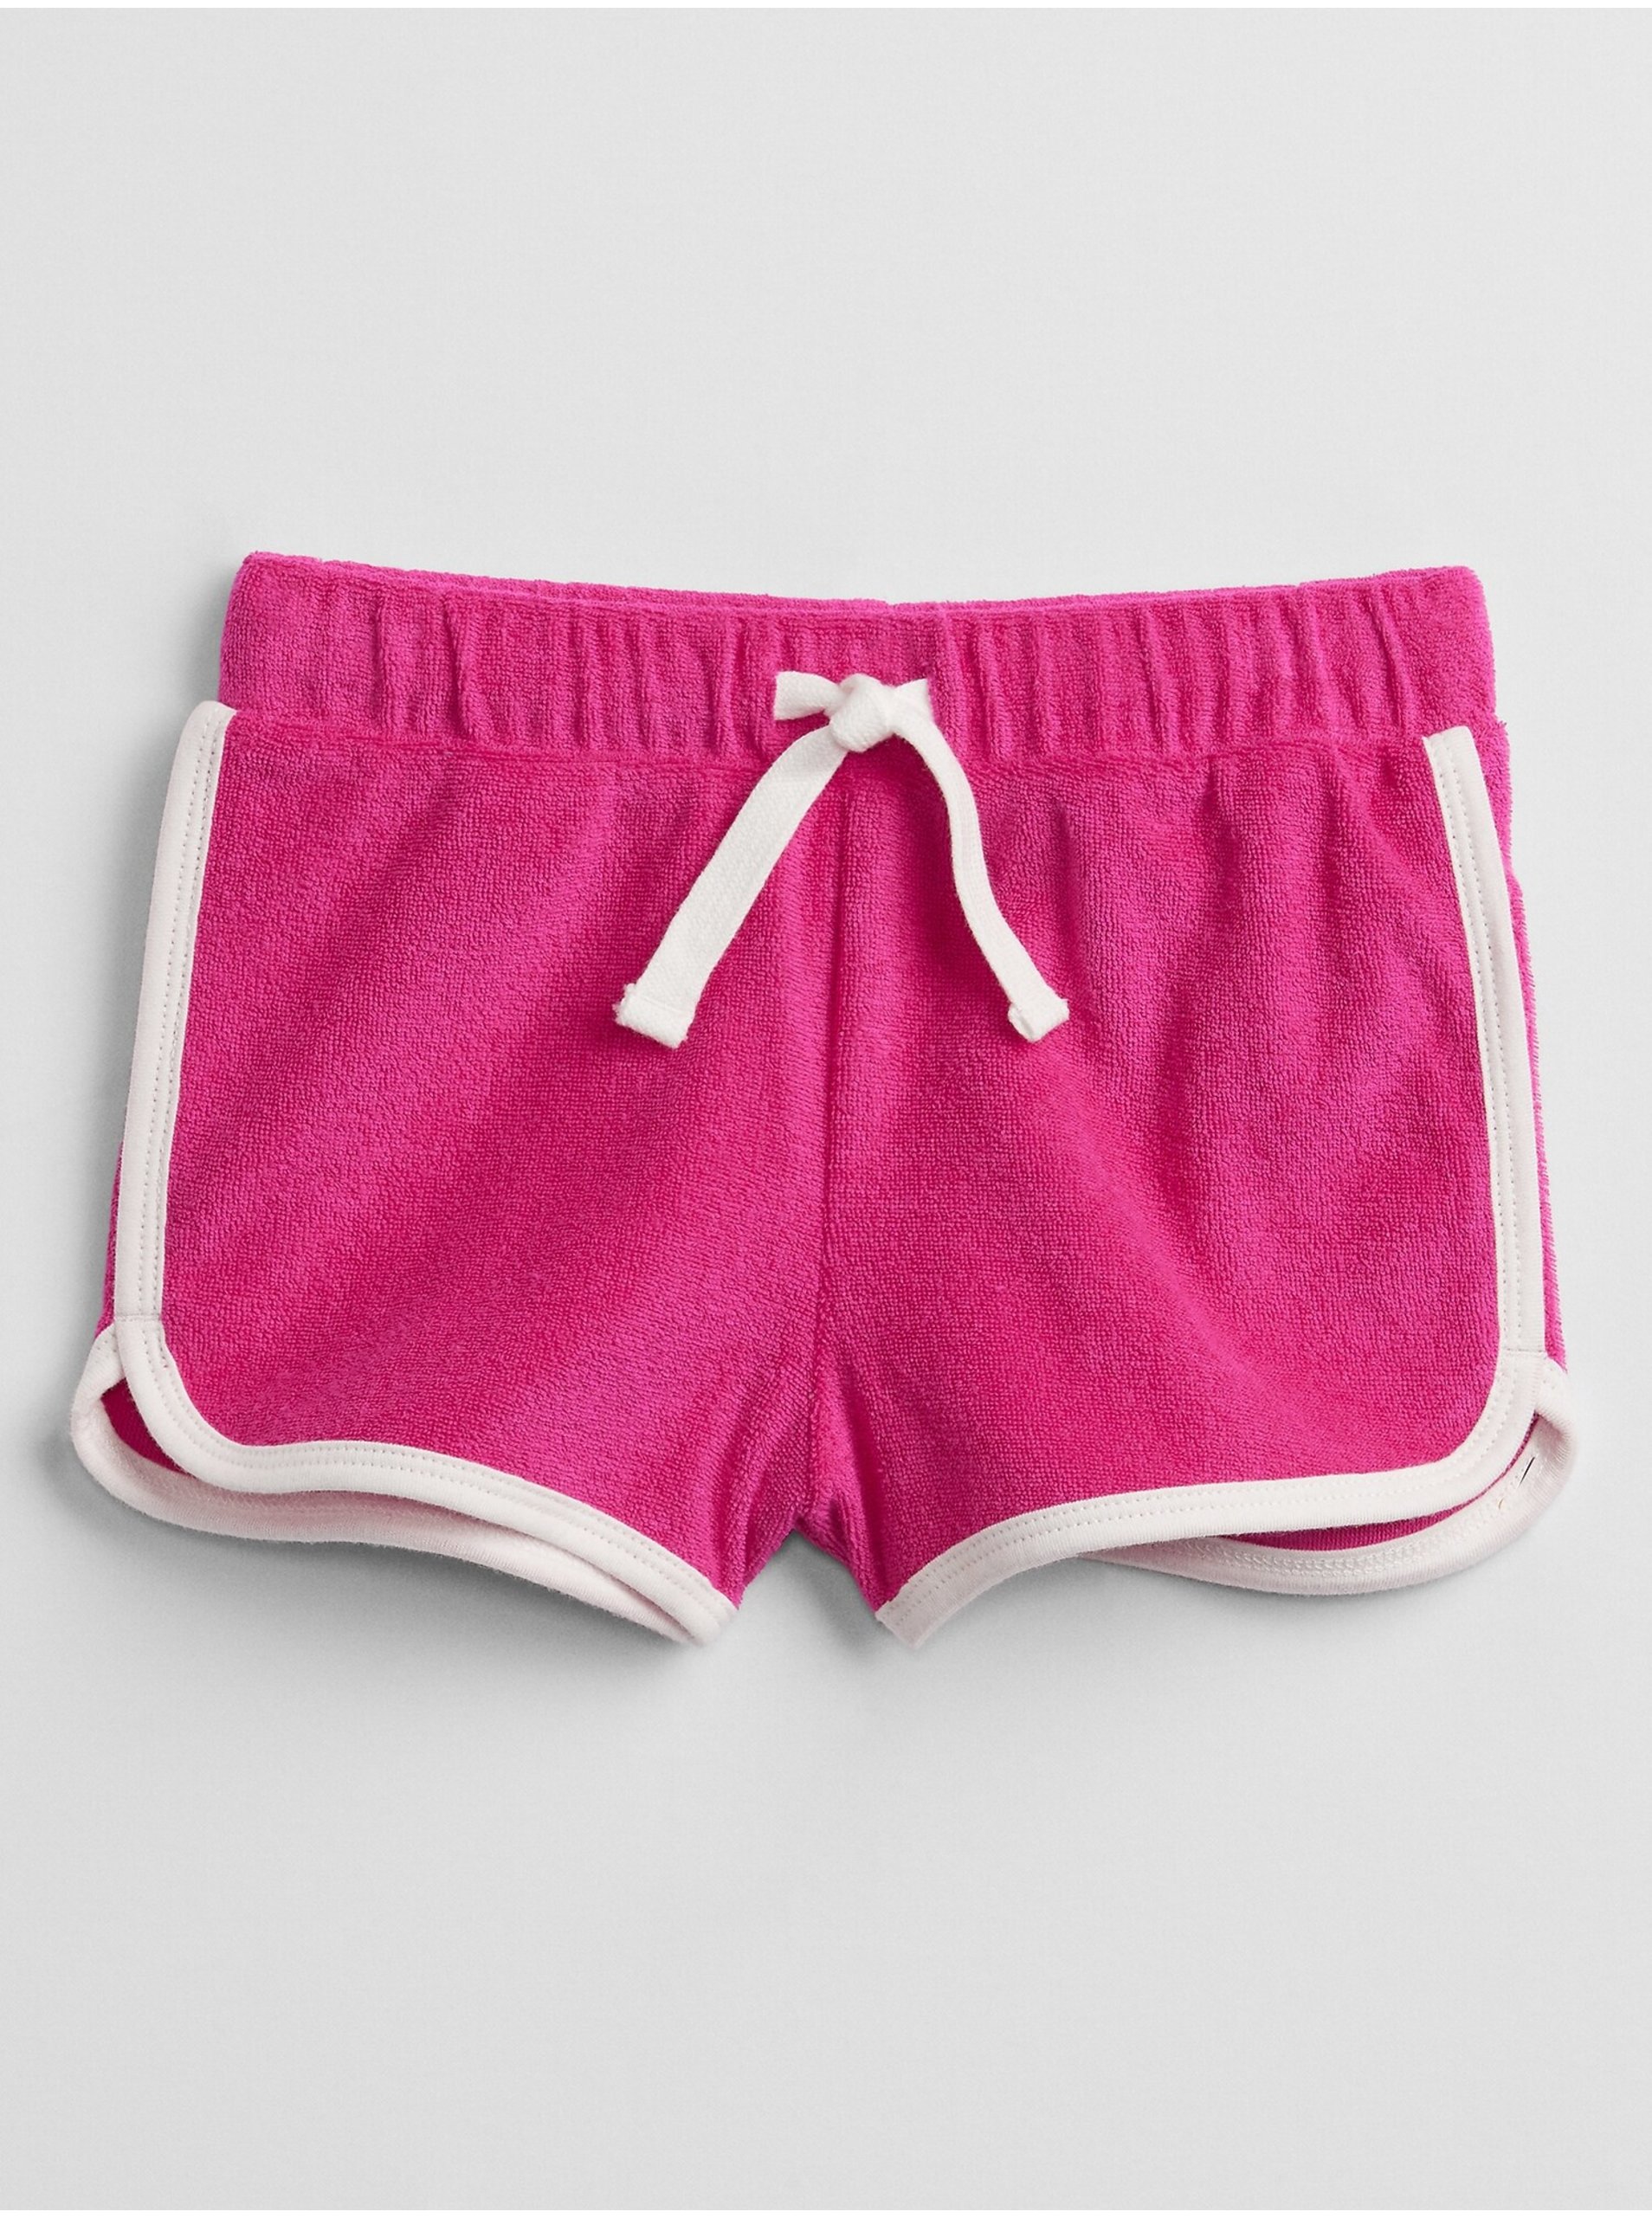 E-shop Růžové holčičí dětské kraťasy knit dolphin shorts GAP